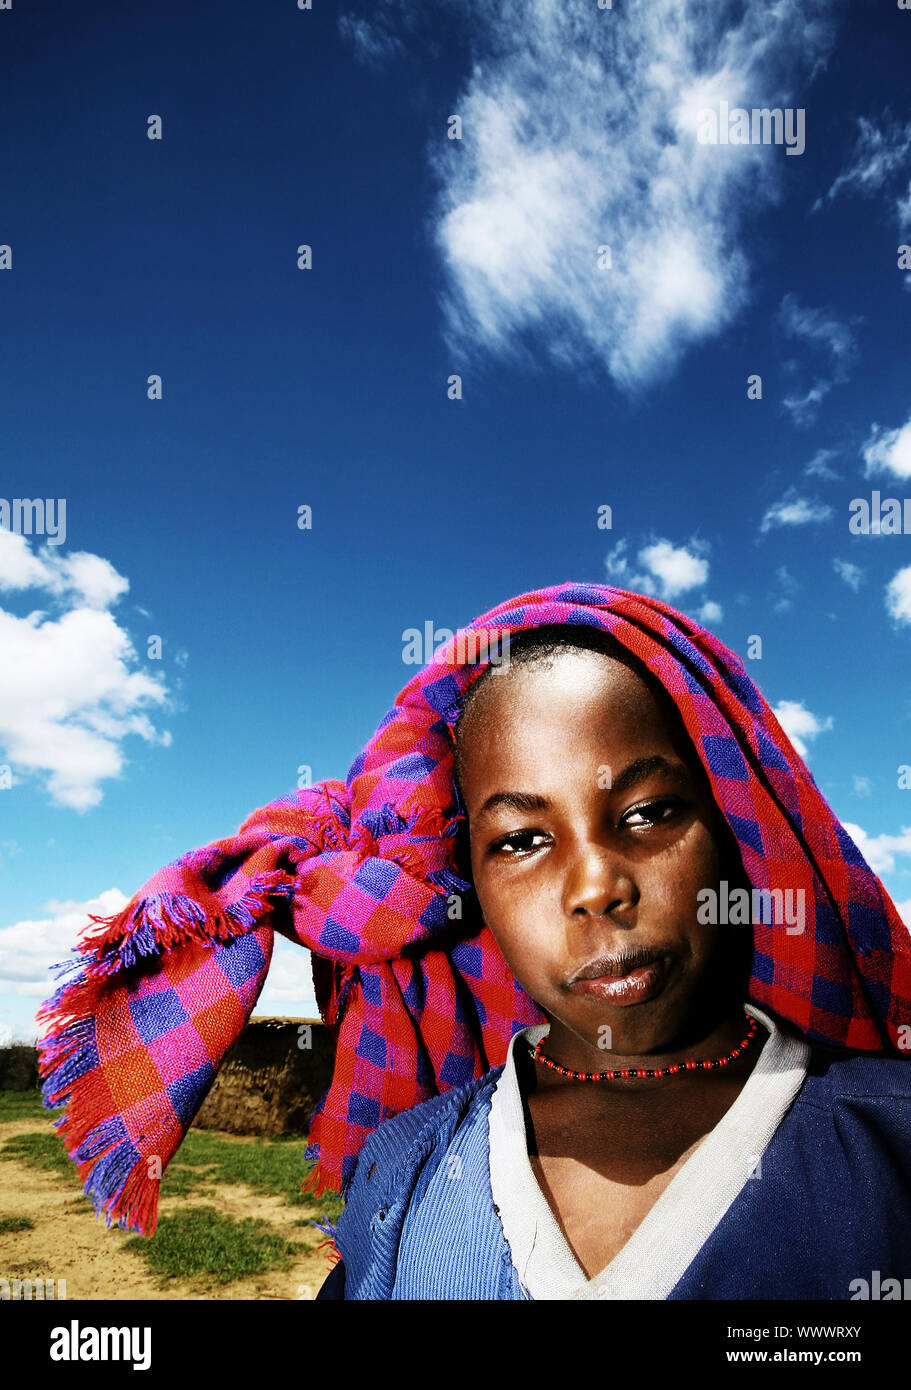 Enfant pauvre d'Afrique portrait en extérieur Banque D'Images